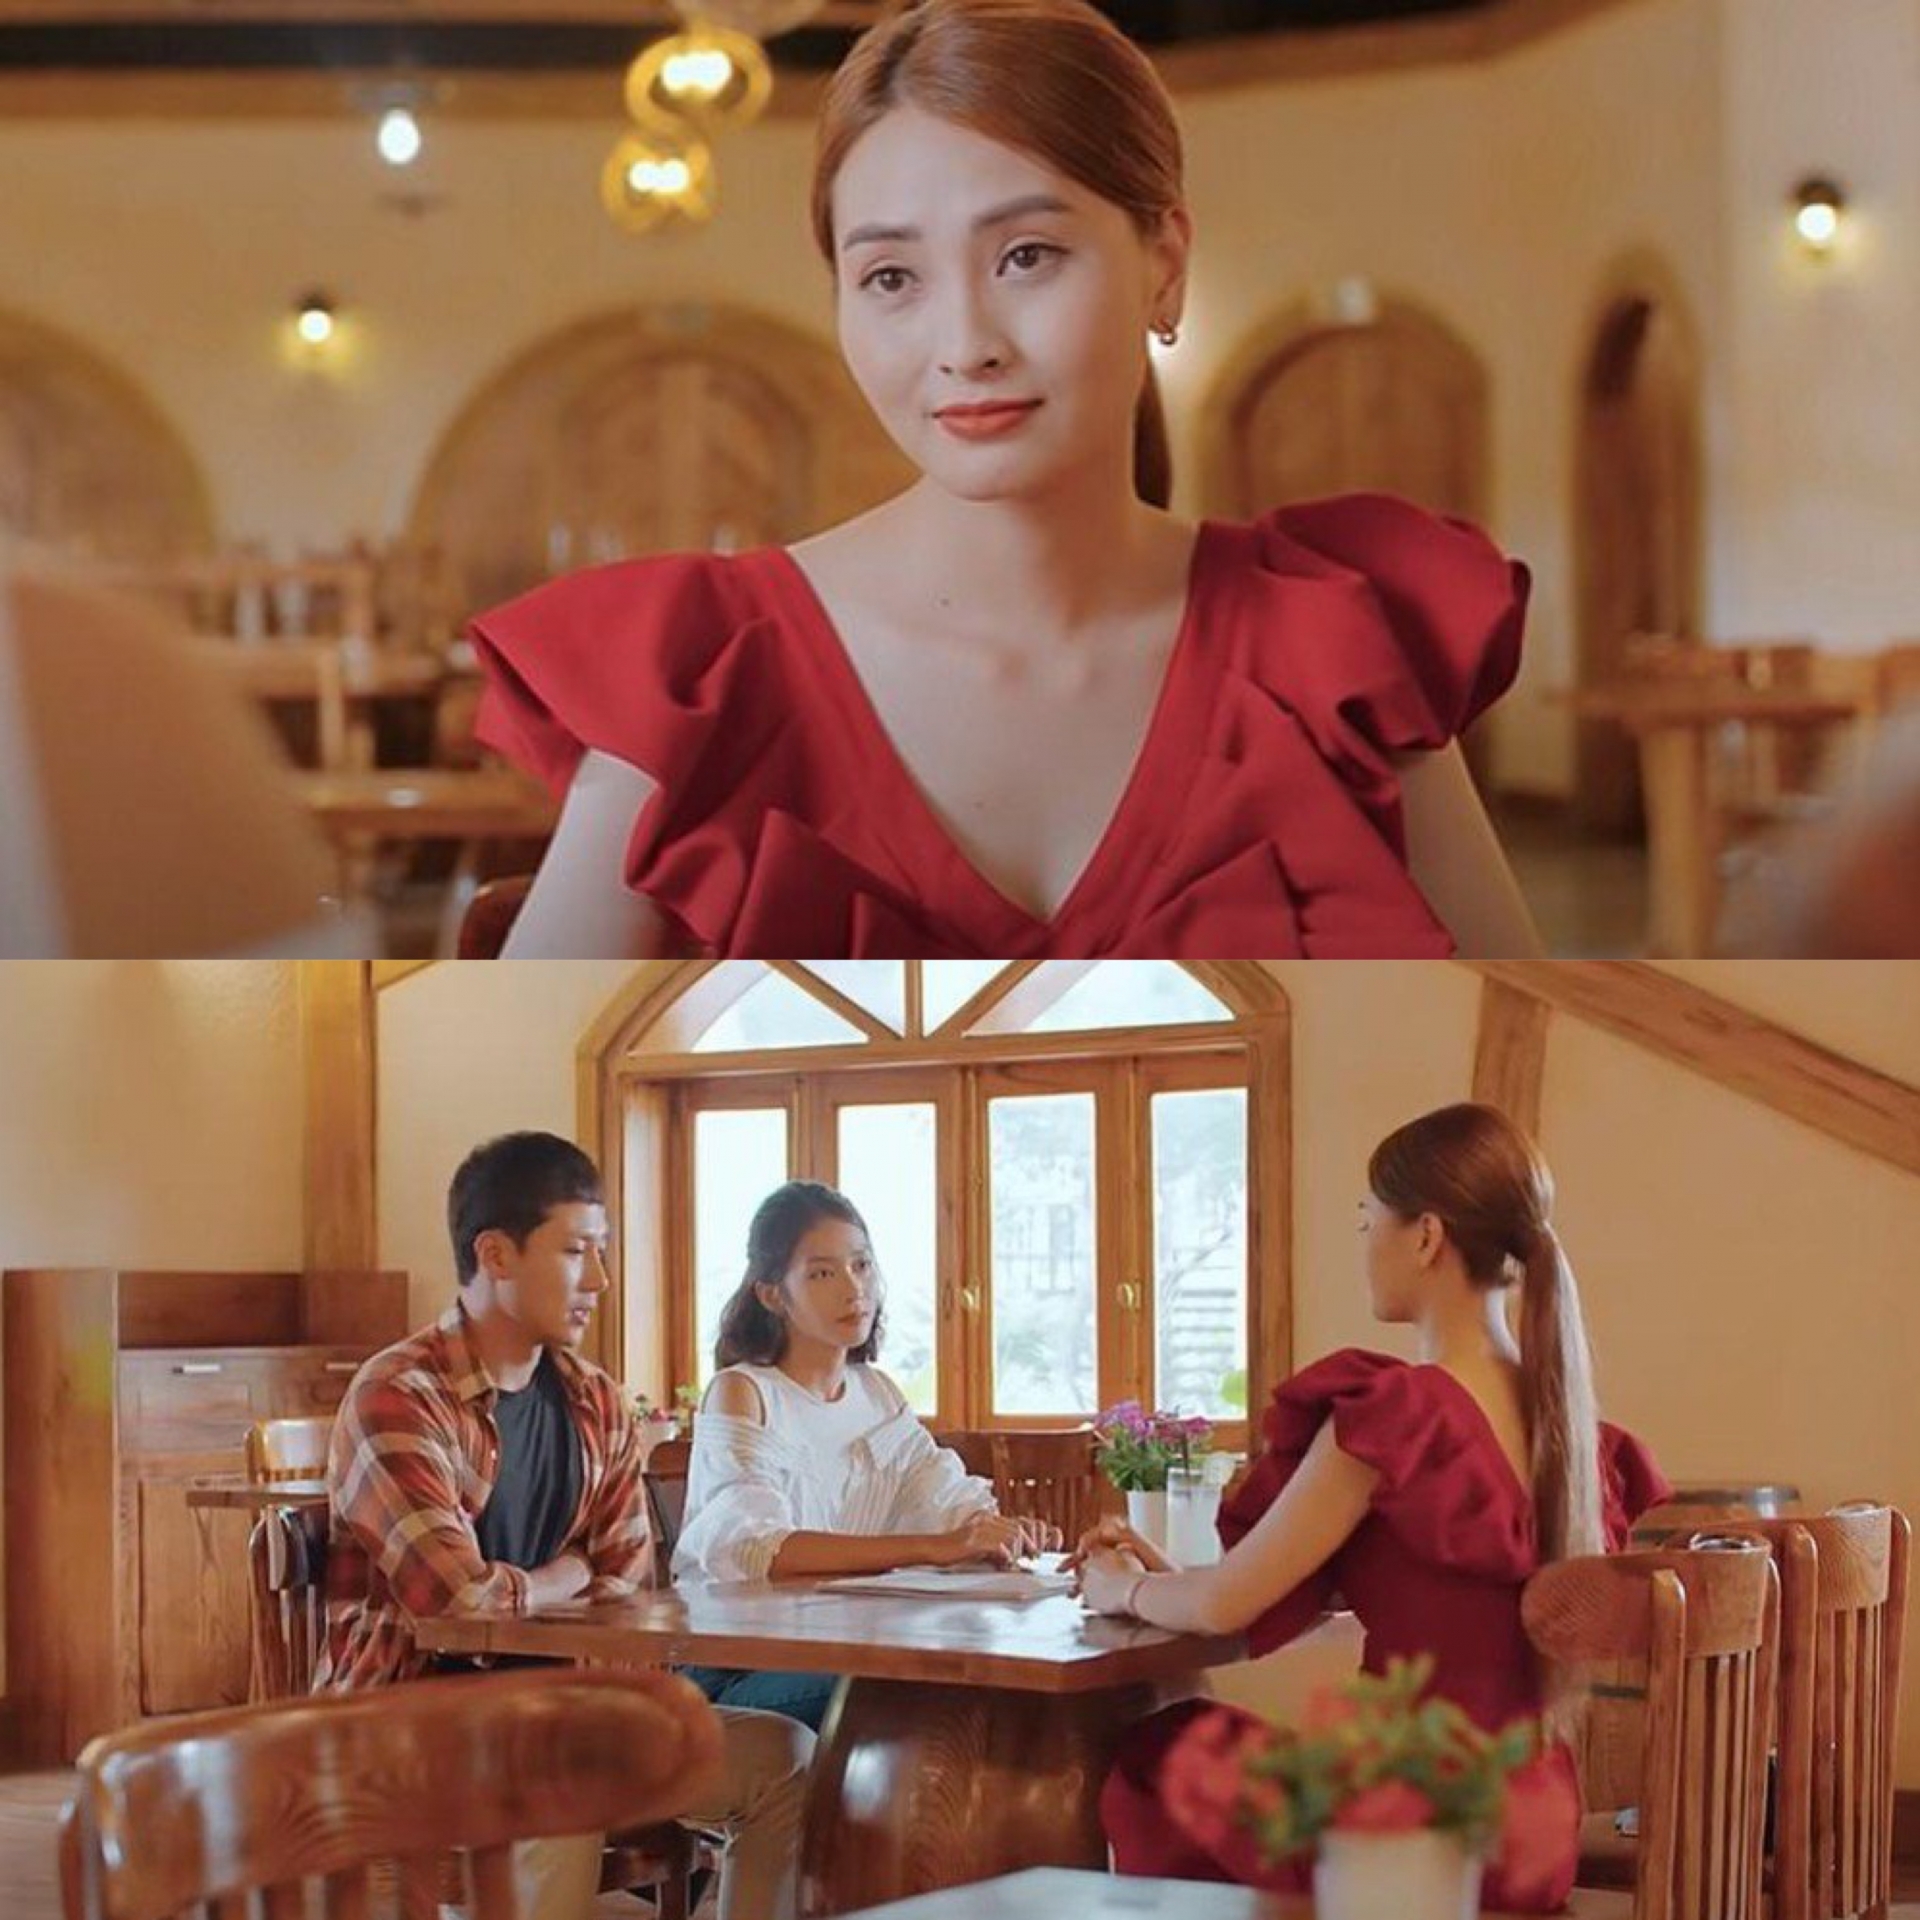 Ngồi chung một khung hình nhưng chiếc váy đỏ quyến rũ của Trang đã làm 'lu mờ' cả Đăng và Nhi. Sự đối lập trong phong cách ăn mặc của Nhi và tình địch cho thấy hai tính cách hoàn toàn trái ngược nhau.